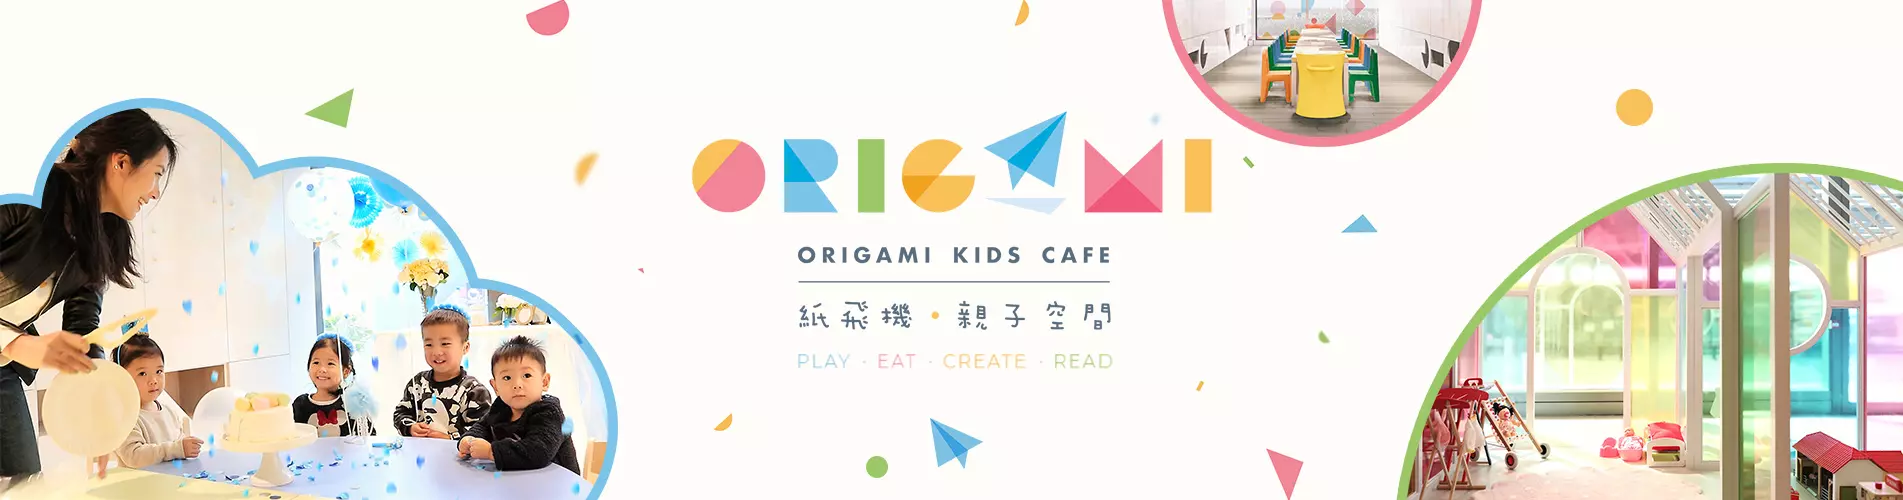 【親子餐廳】紙飛機 Origami Kids Cafe 預訂優惠